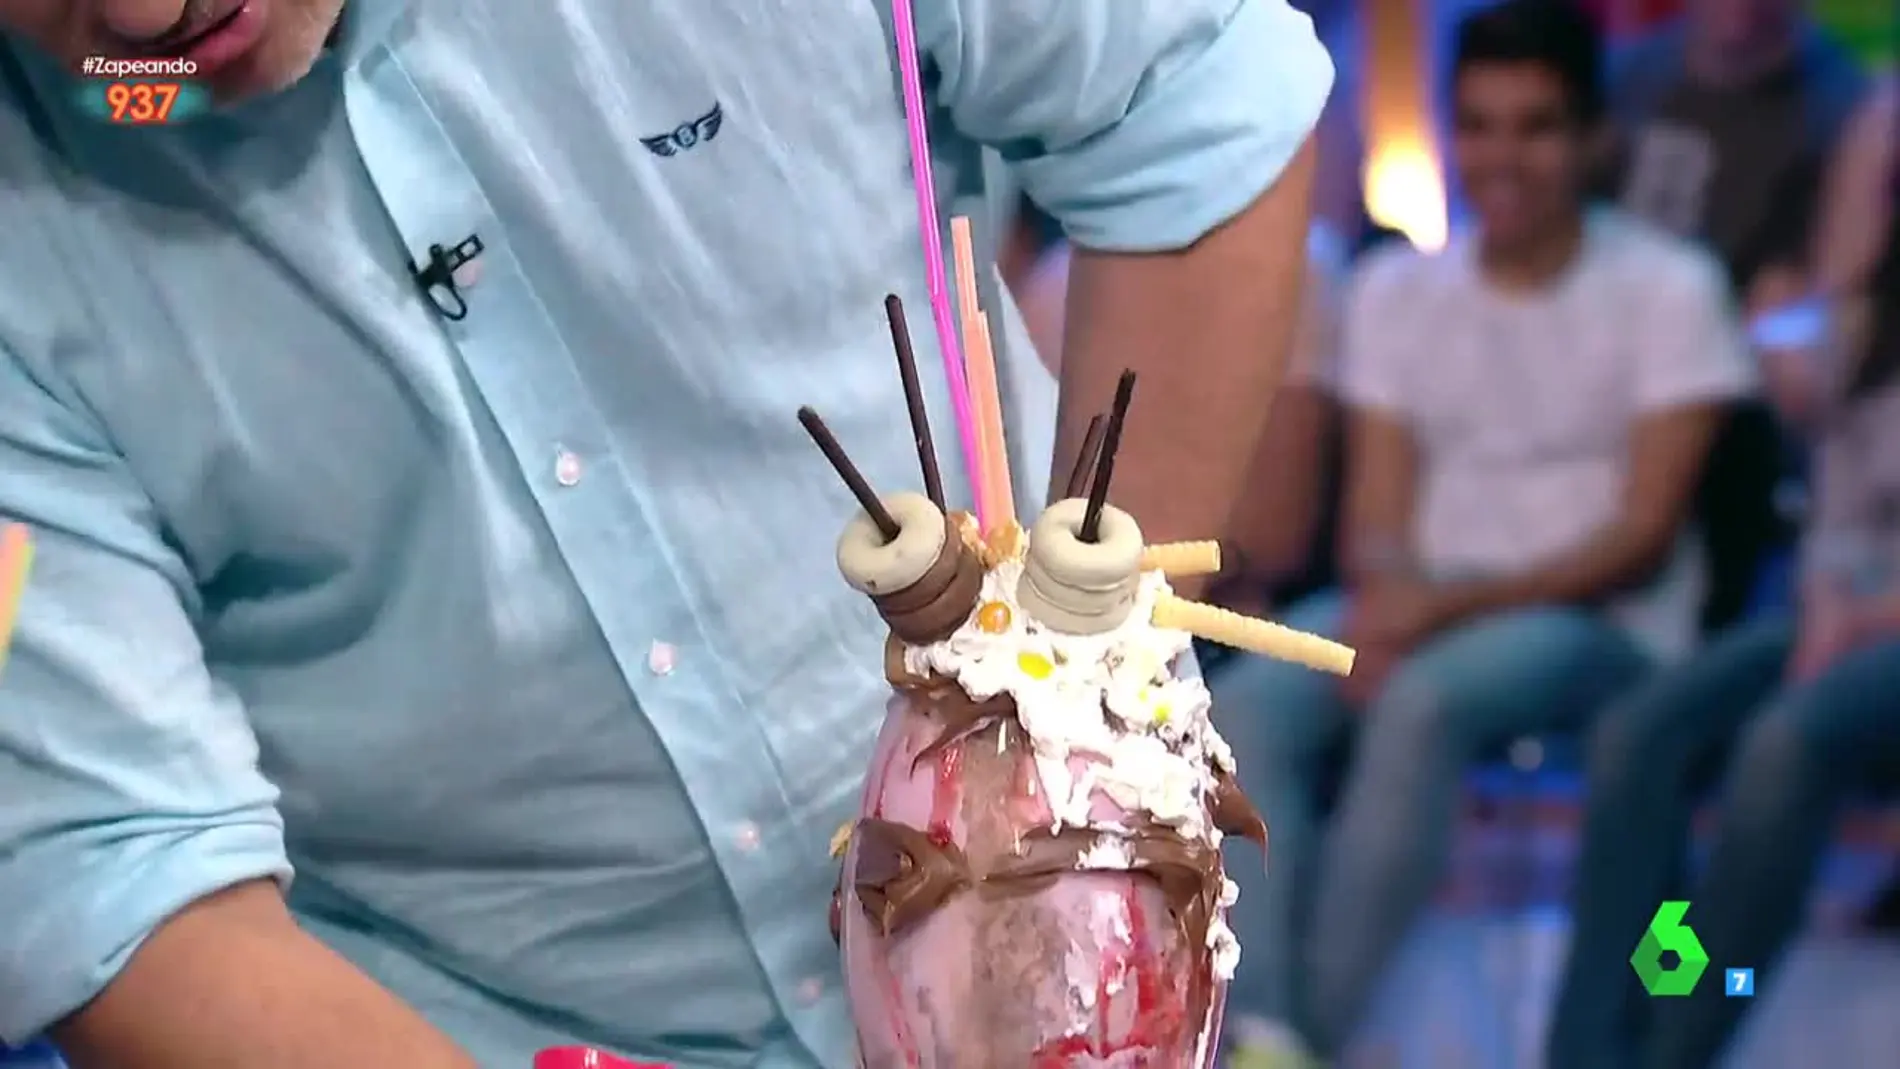 La Supercopa de batido helado de Miki Nadal